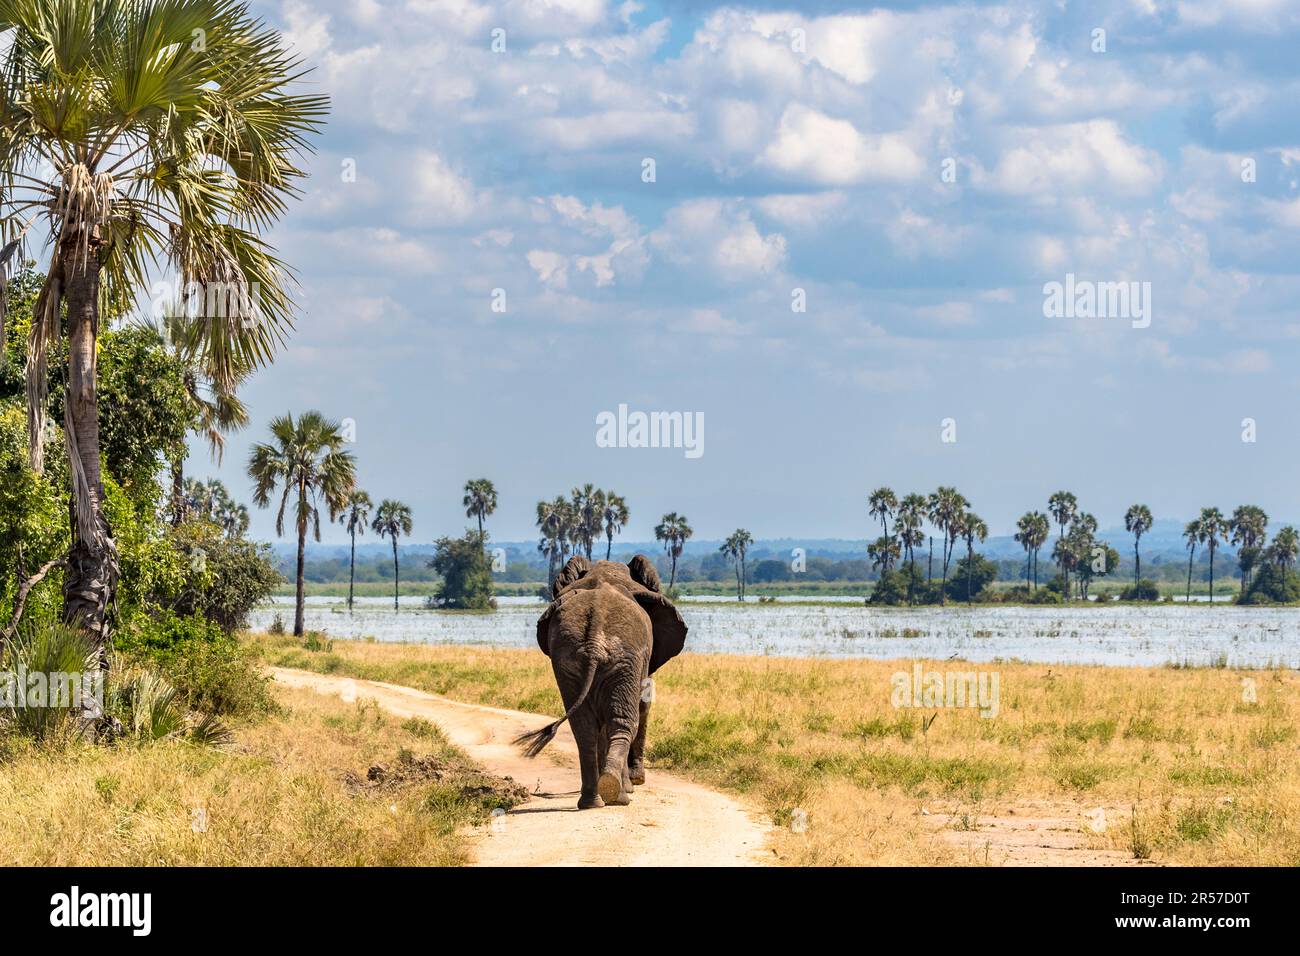 Gli elefanti amano marciare sulle strade del parco nazionale. Qui fanno buoni progressi nella ricerca del cibo. Elefanti presso il Liwonde National Park del fiume Shire del Malawi Foto Stock